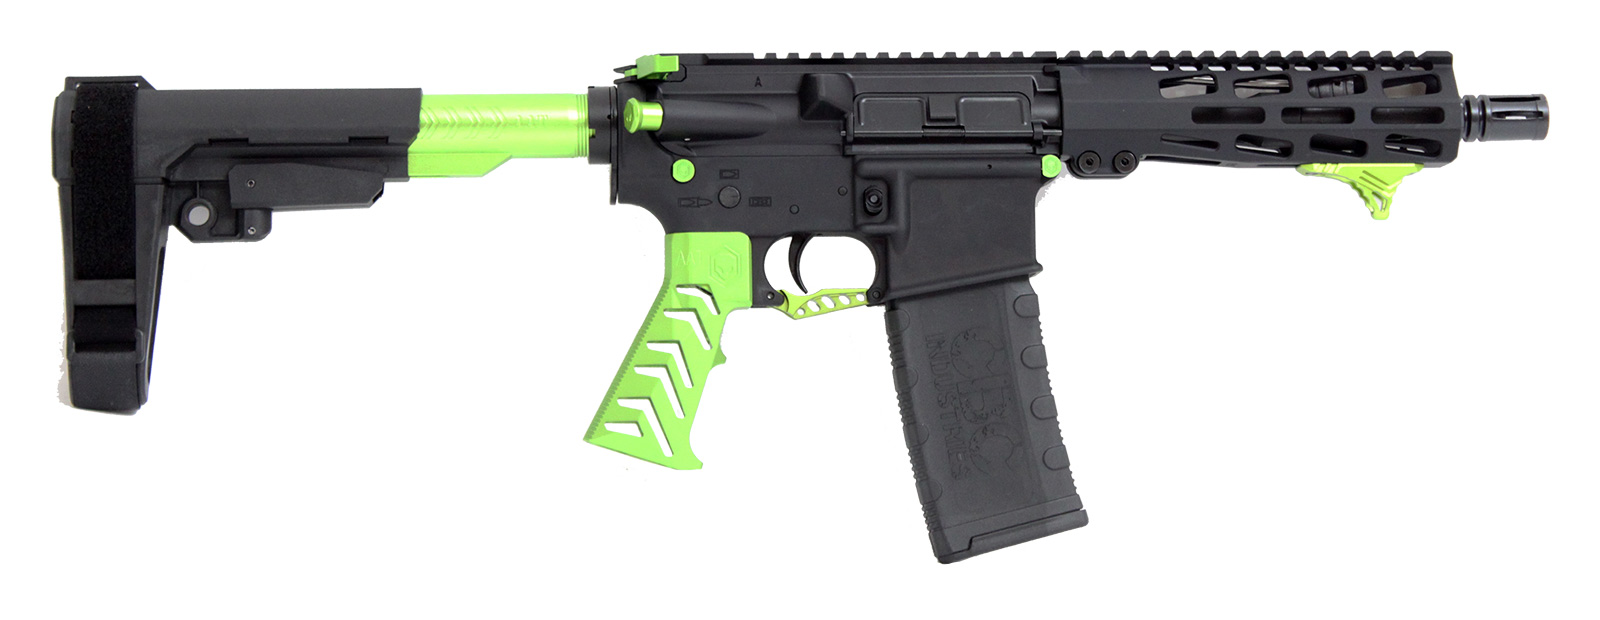 cbc-ps2-forged-aluminum-ar-pistol-alien-green-223-wylde-7-5″-barrel-m-lok-rail-sba3-brace